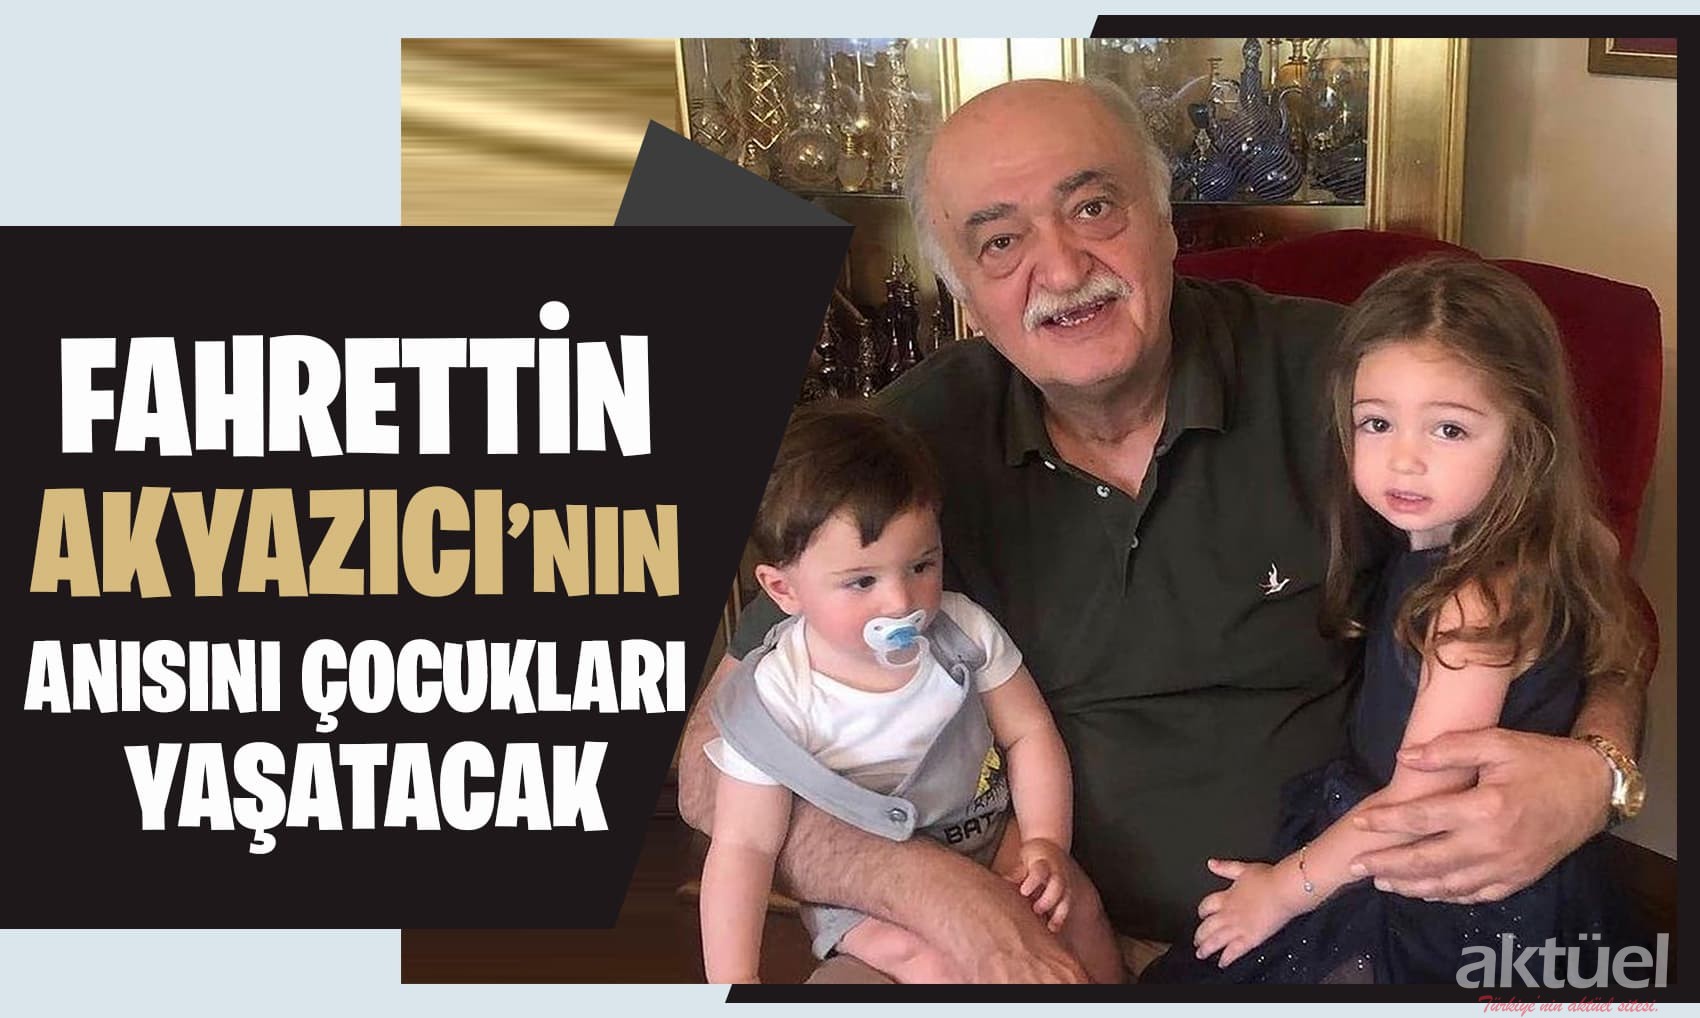 Emre Akyazıcı ve Elif Girgin babaları Fahrettin Akyazıcı’nın anısını yaşatıyor.